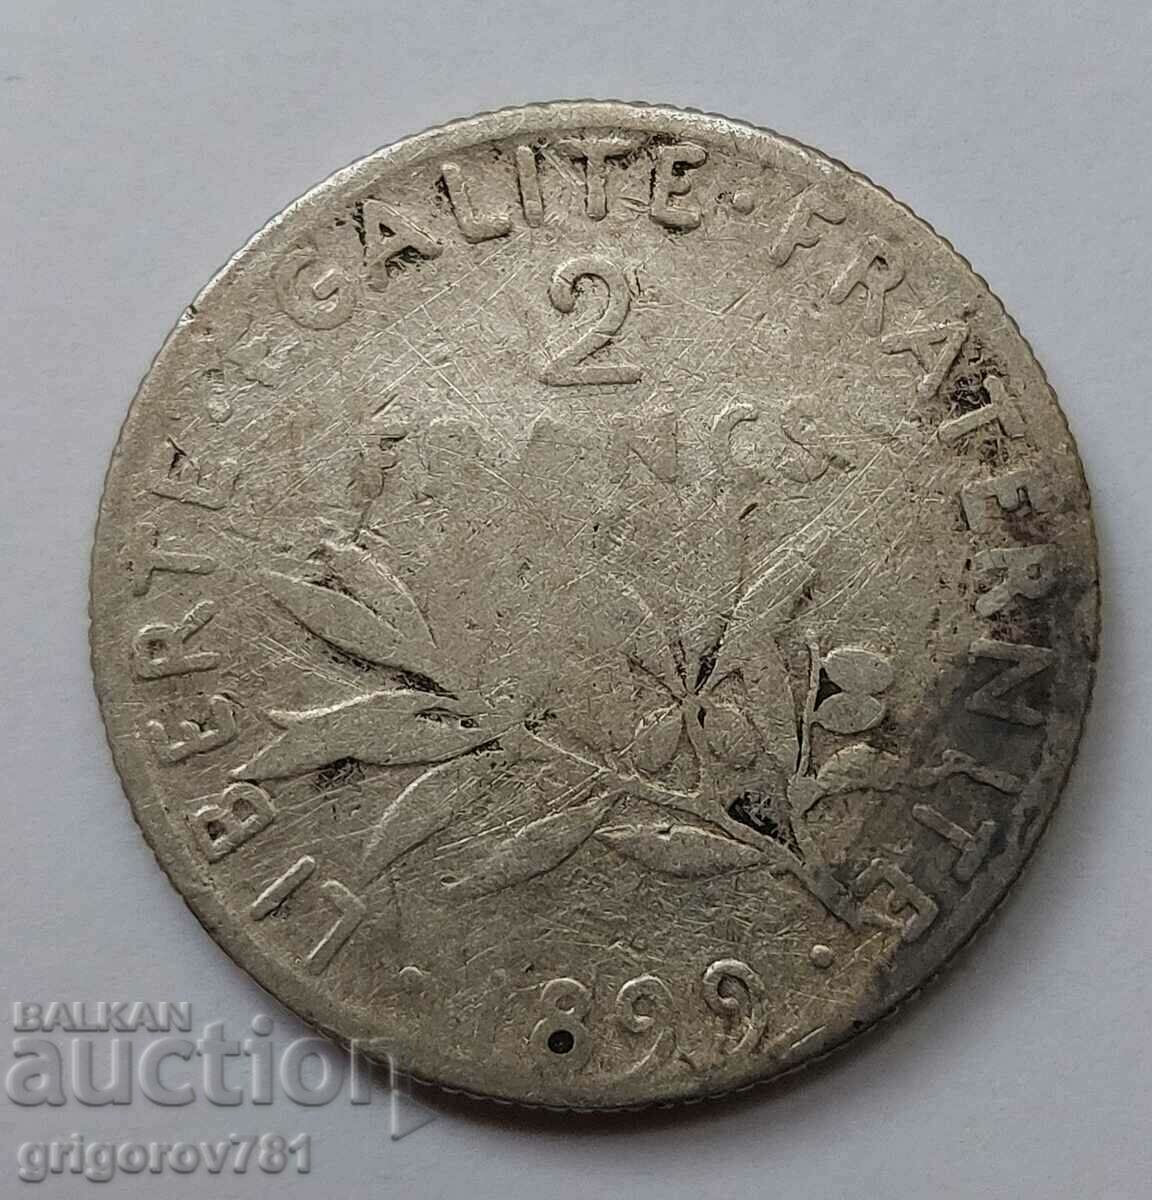 2 Franci Argint Franta 1899 - Moneda de argint #151